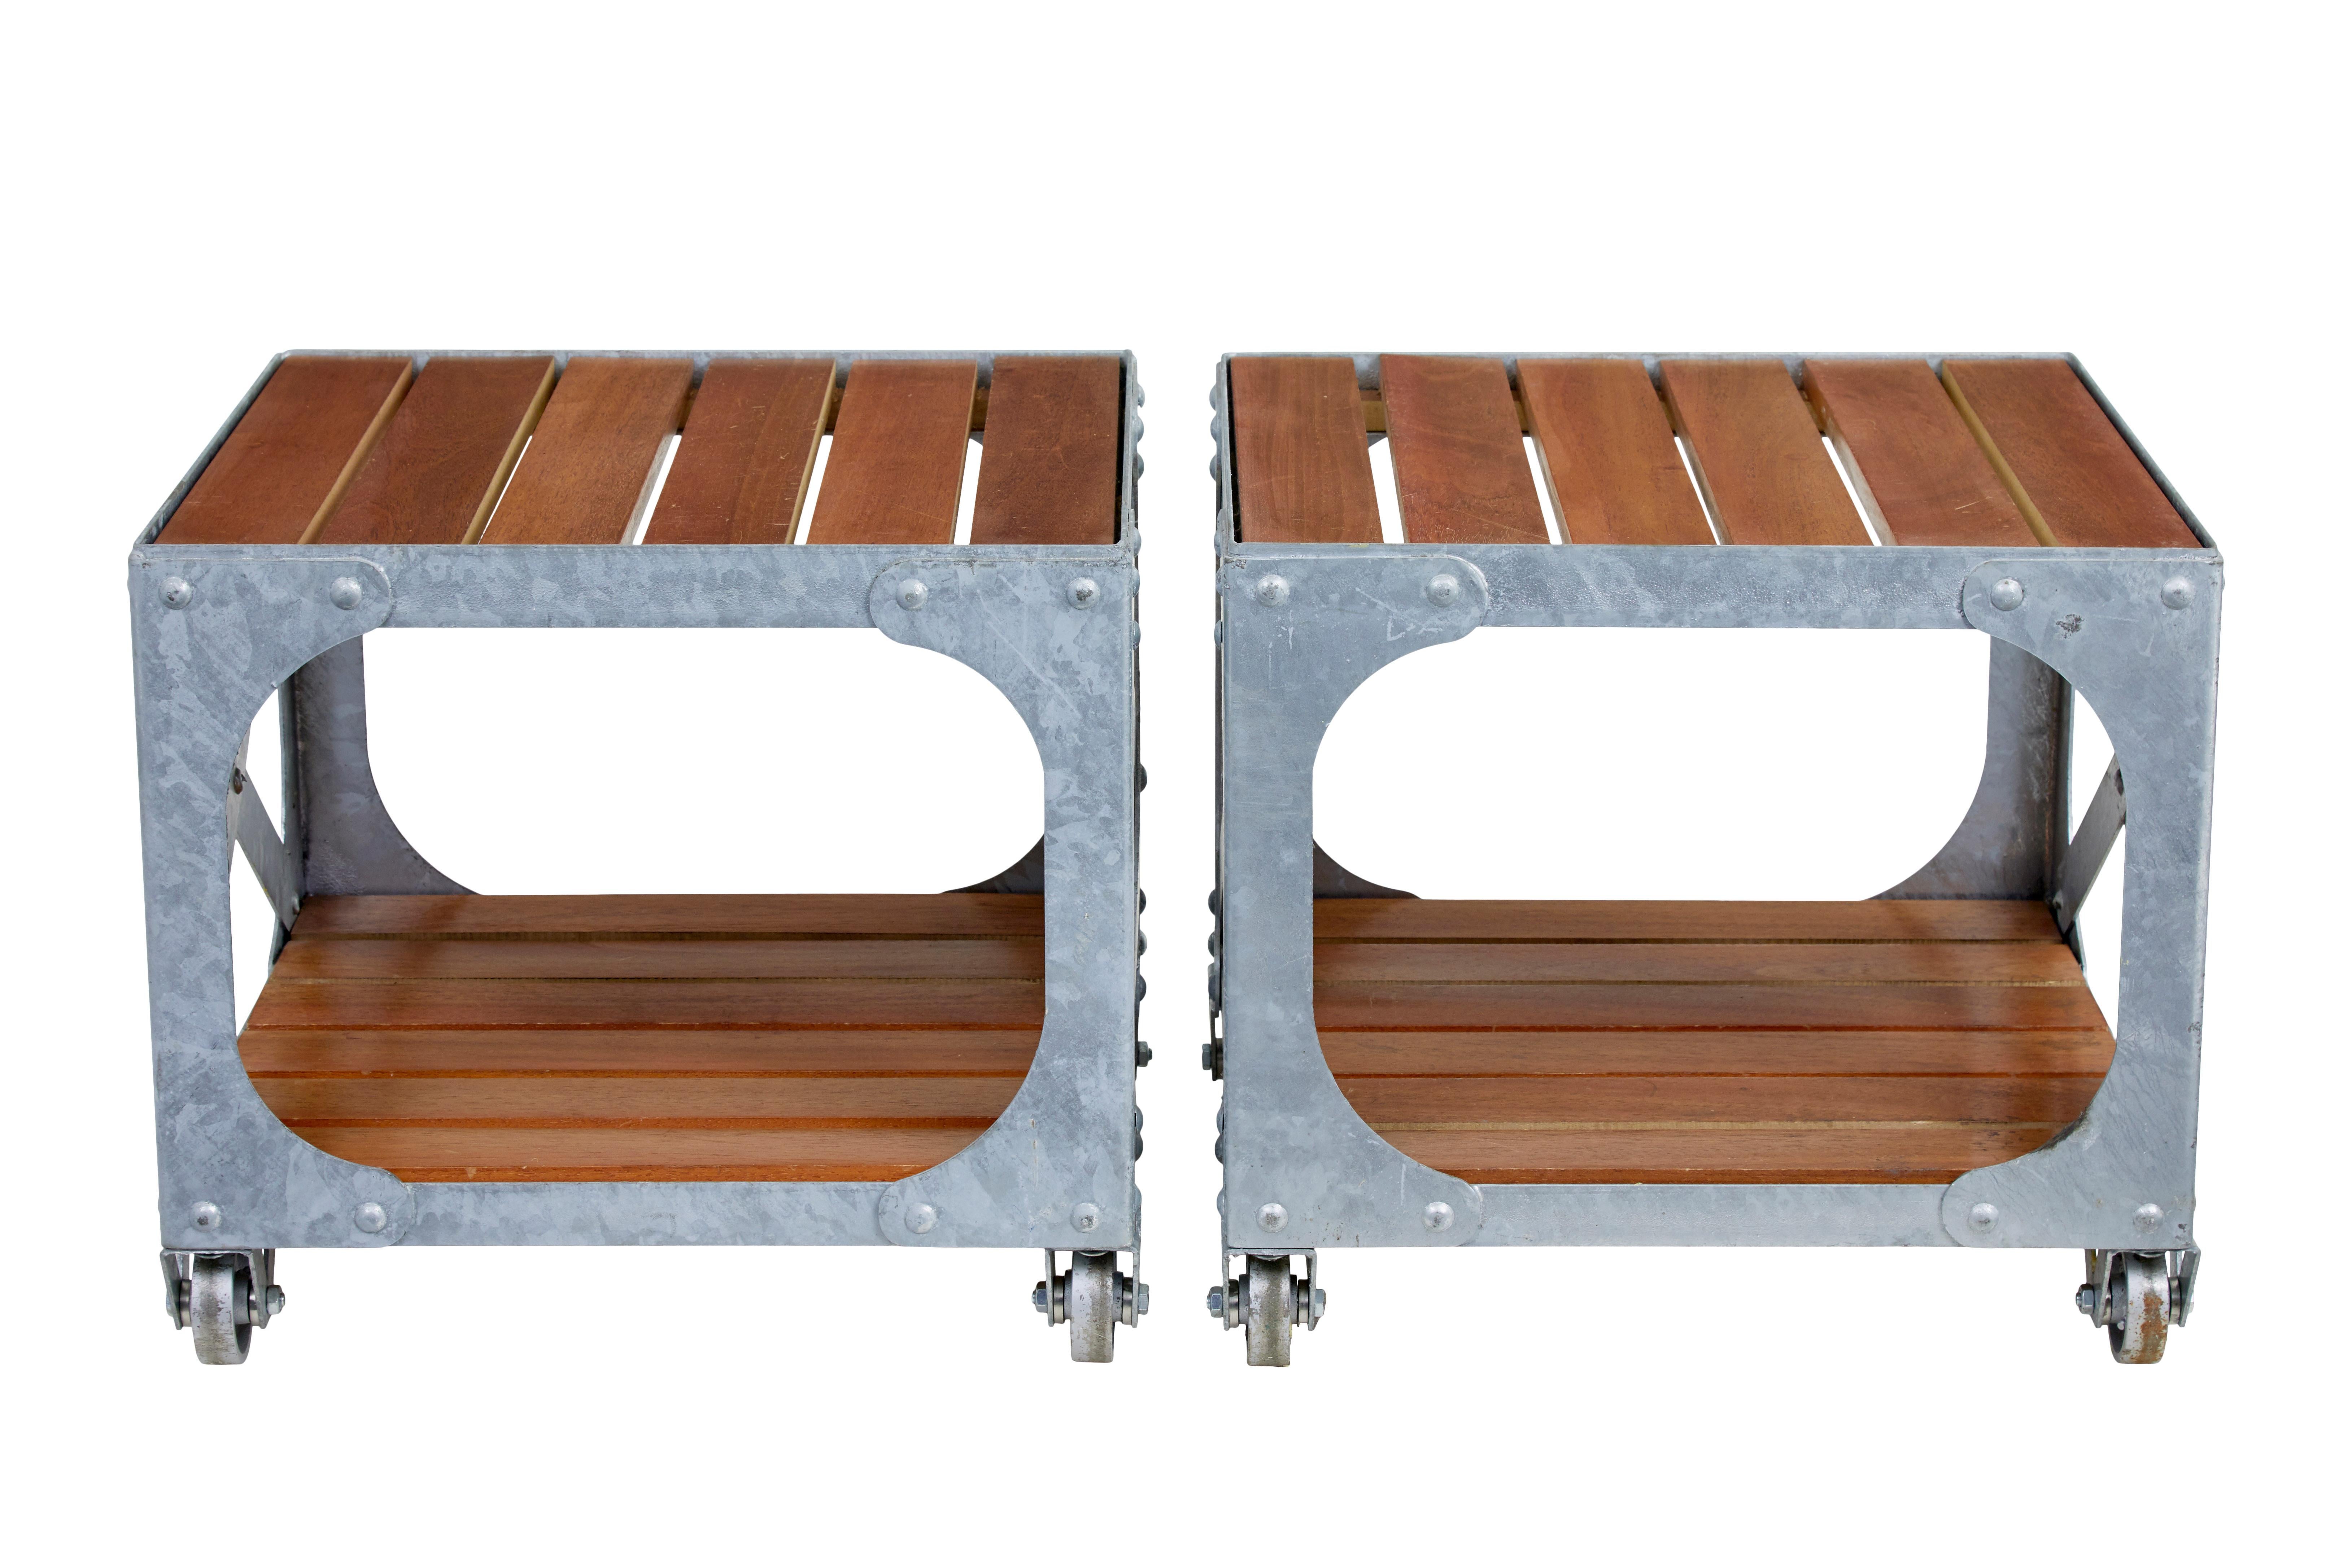 Ein Paar Beistelltische aus verzinktem Stahl und Teakholz, um 1990.

Qualitativ hochwertiges Paar industriell inspirierter Tische aus verzinktem Stahl mit Teakholz-Einsatzlatten.  Würde perfekt in ein modernes Interieur oder Exterieur passen.

Die